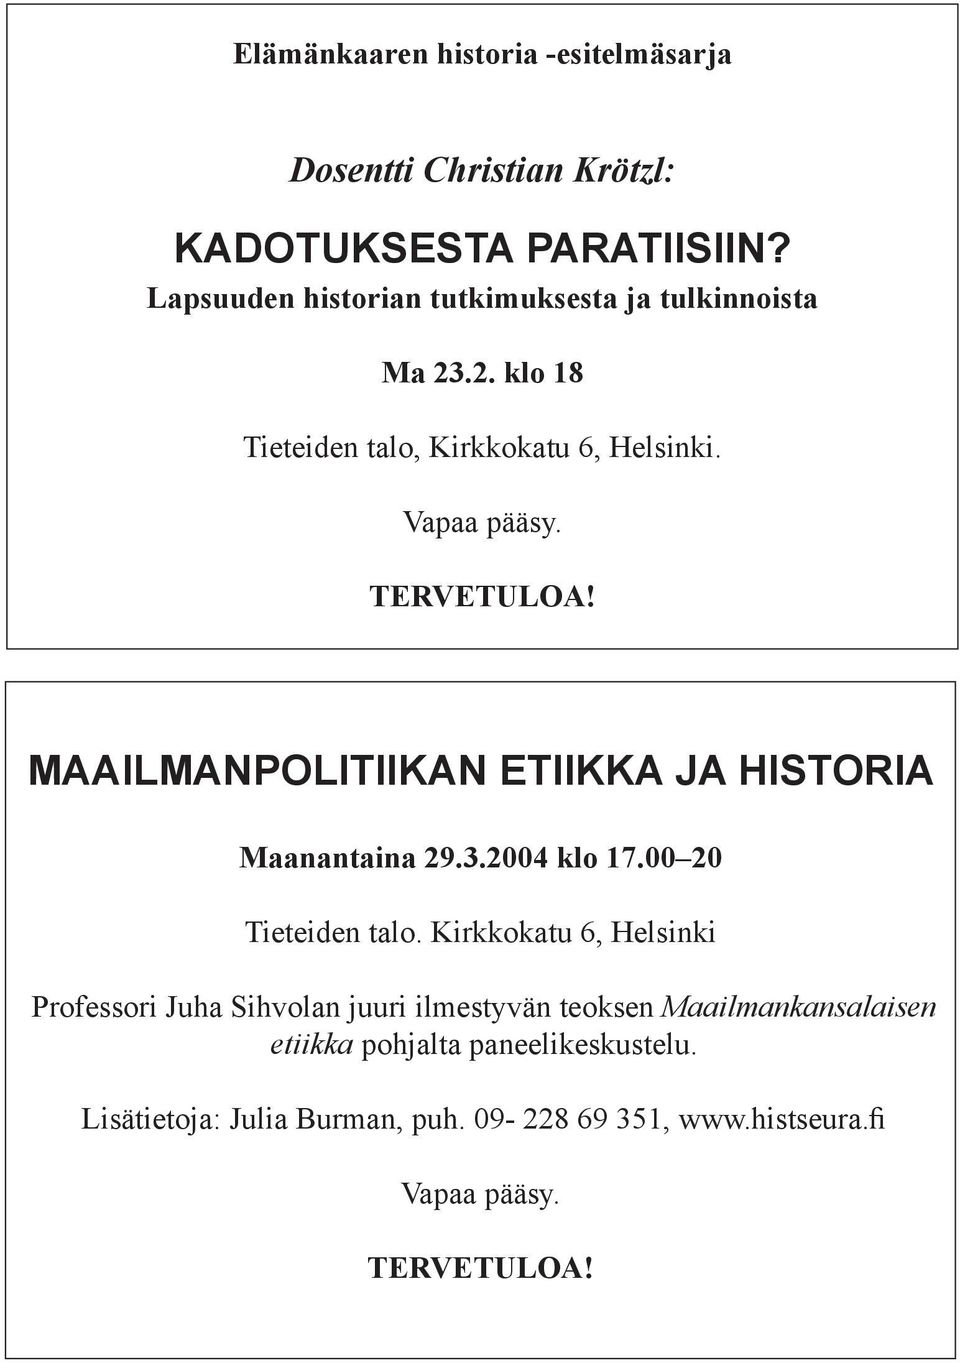 MAAILMANPOLITIIKAN ETIIKKA JA HISTORIA Maanantaina 29.3.2004 klo 17.00 20 Tieteiden talo.